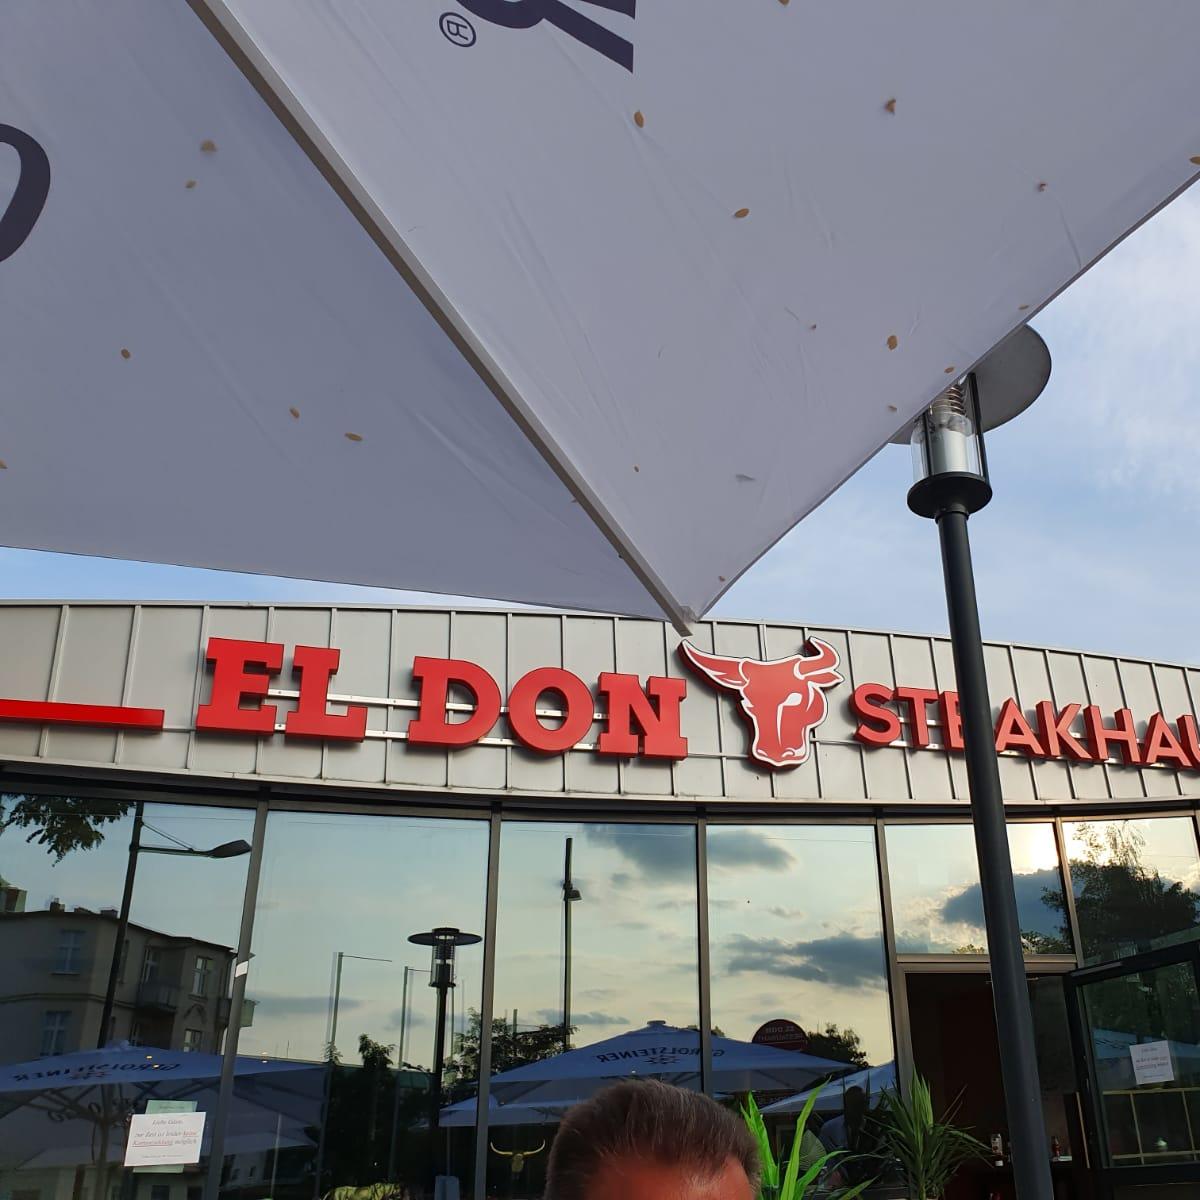 Restaurant "El Don Restaurant - Steakhaus" in  Teltow